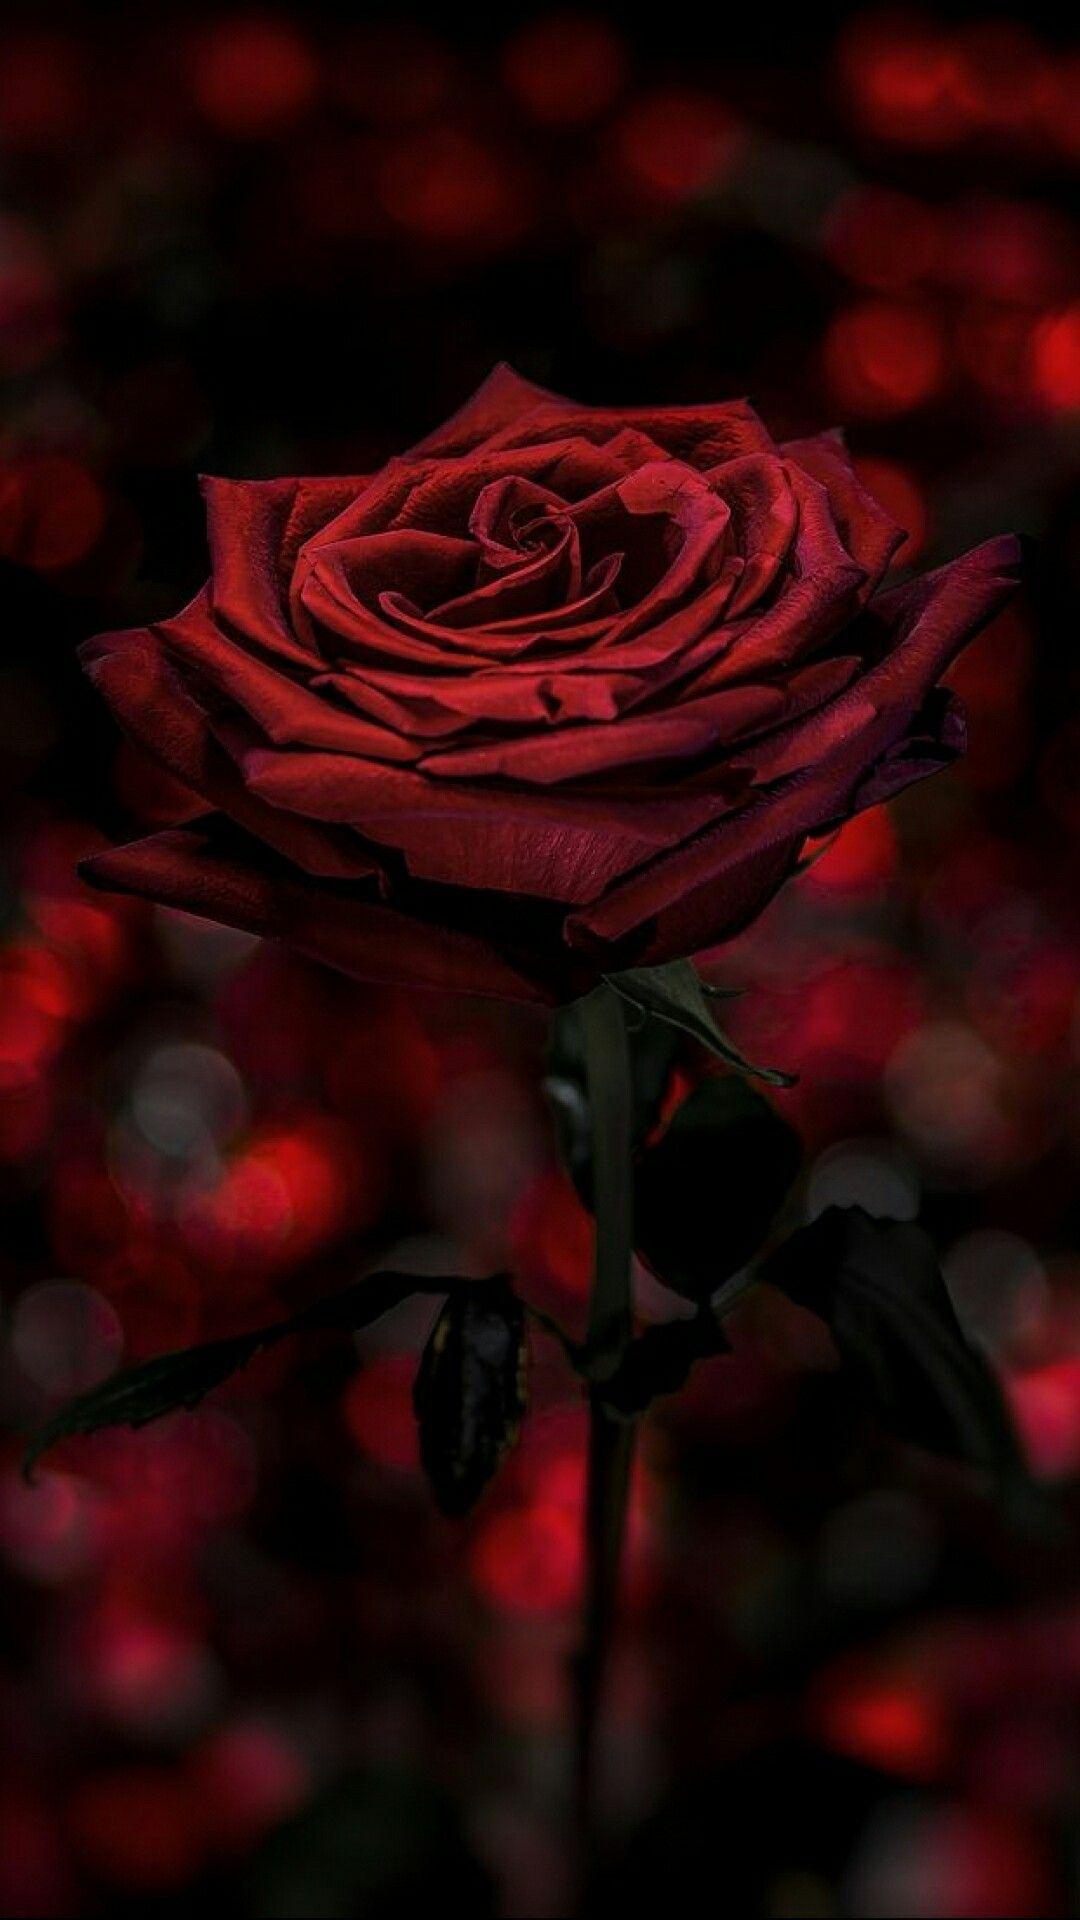 tapete de rosas,rot,gartenrosen,blütenblatt,schwarz,rose